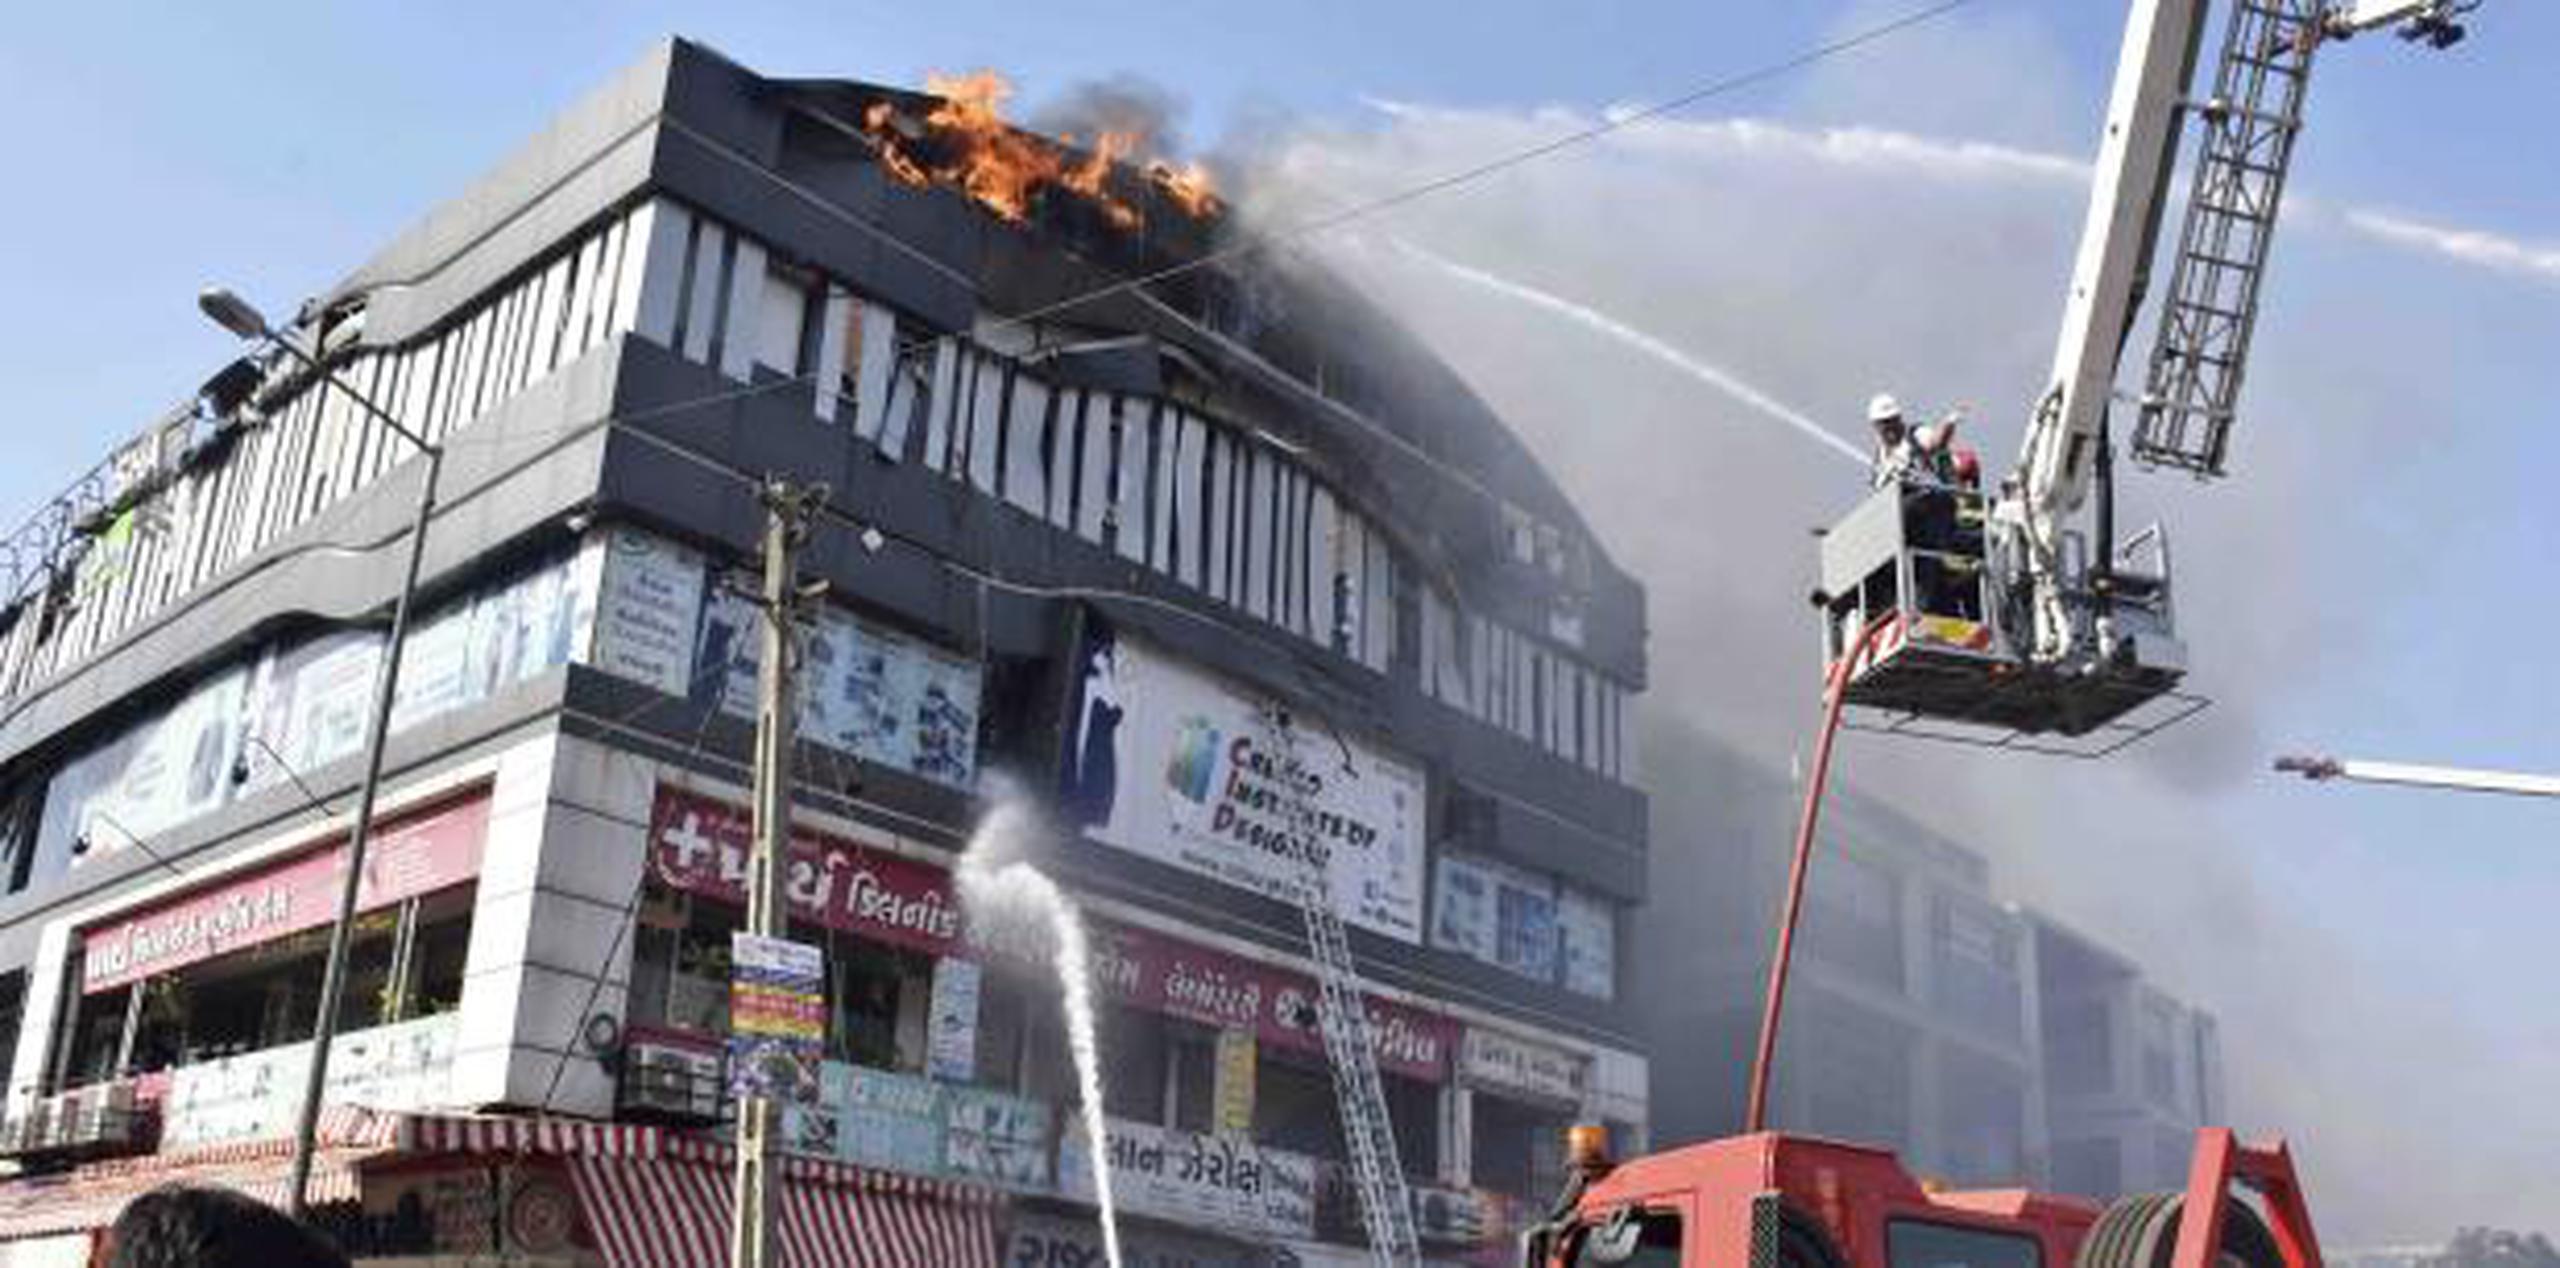 El fuego devoró el tercero y el cuarto piso del edificio. (AP / Sarju Parekh)